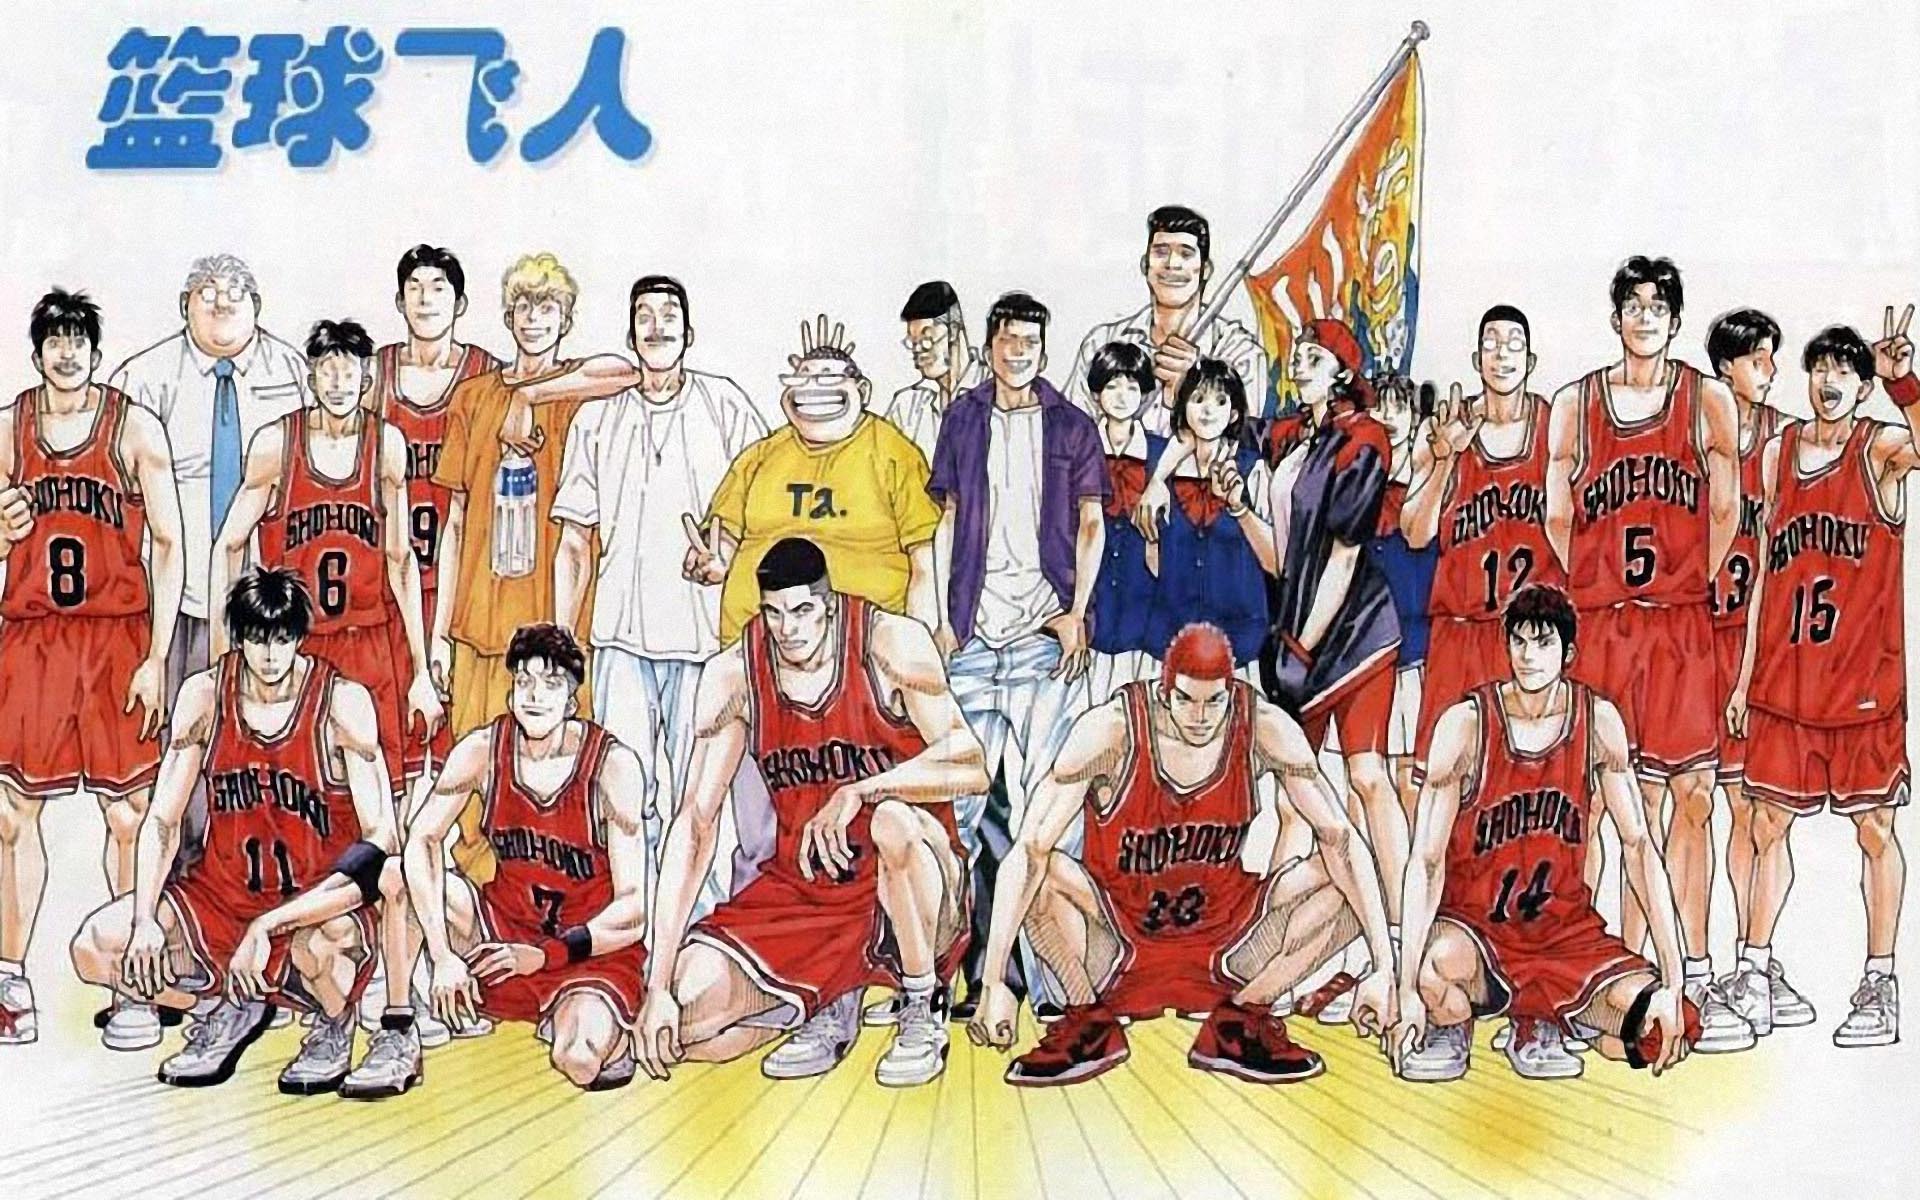 Slam Dunk. Shohoku basketball team and supporters.